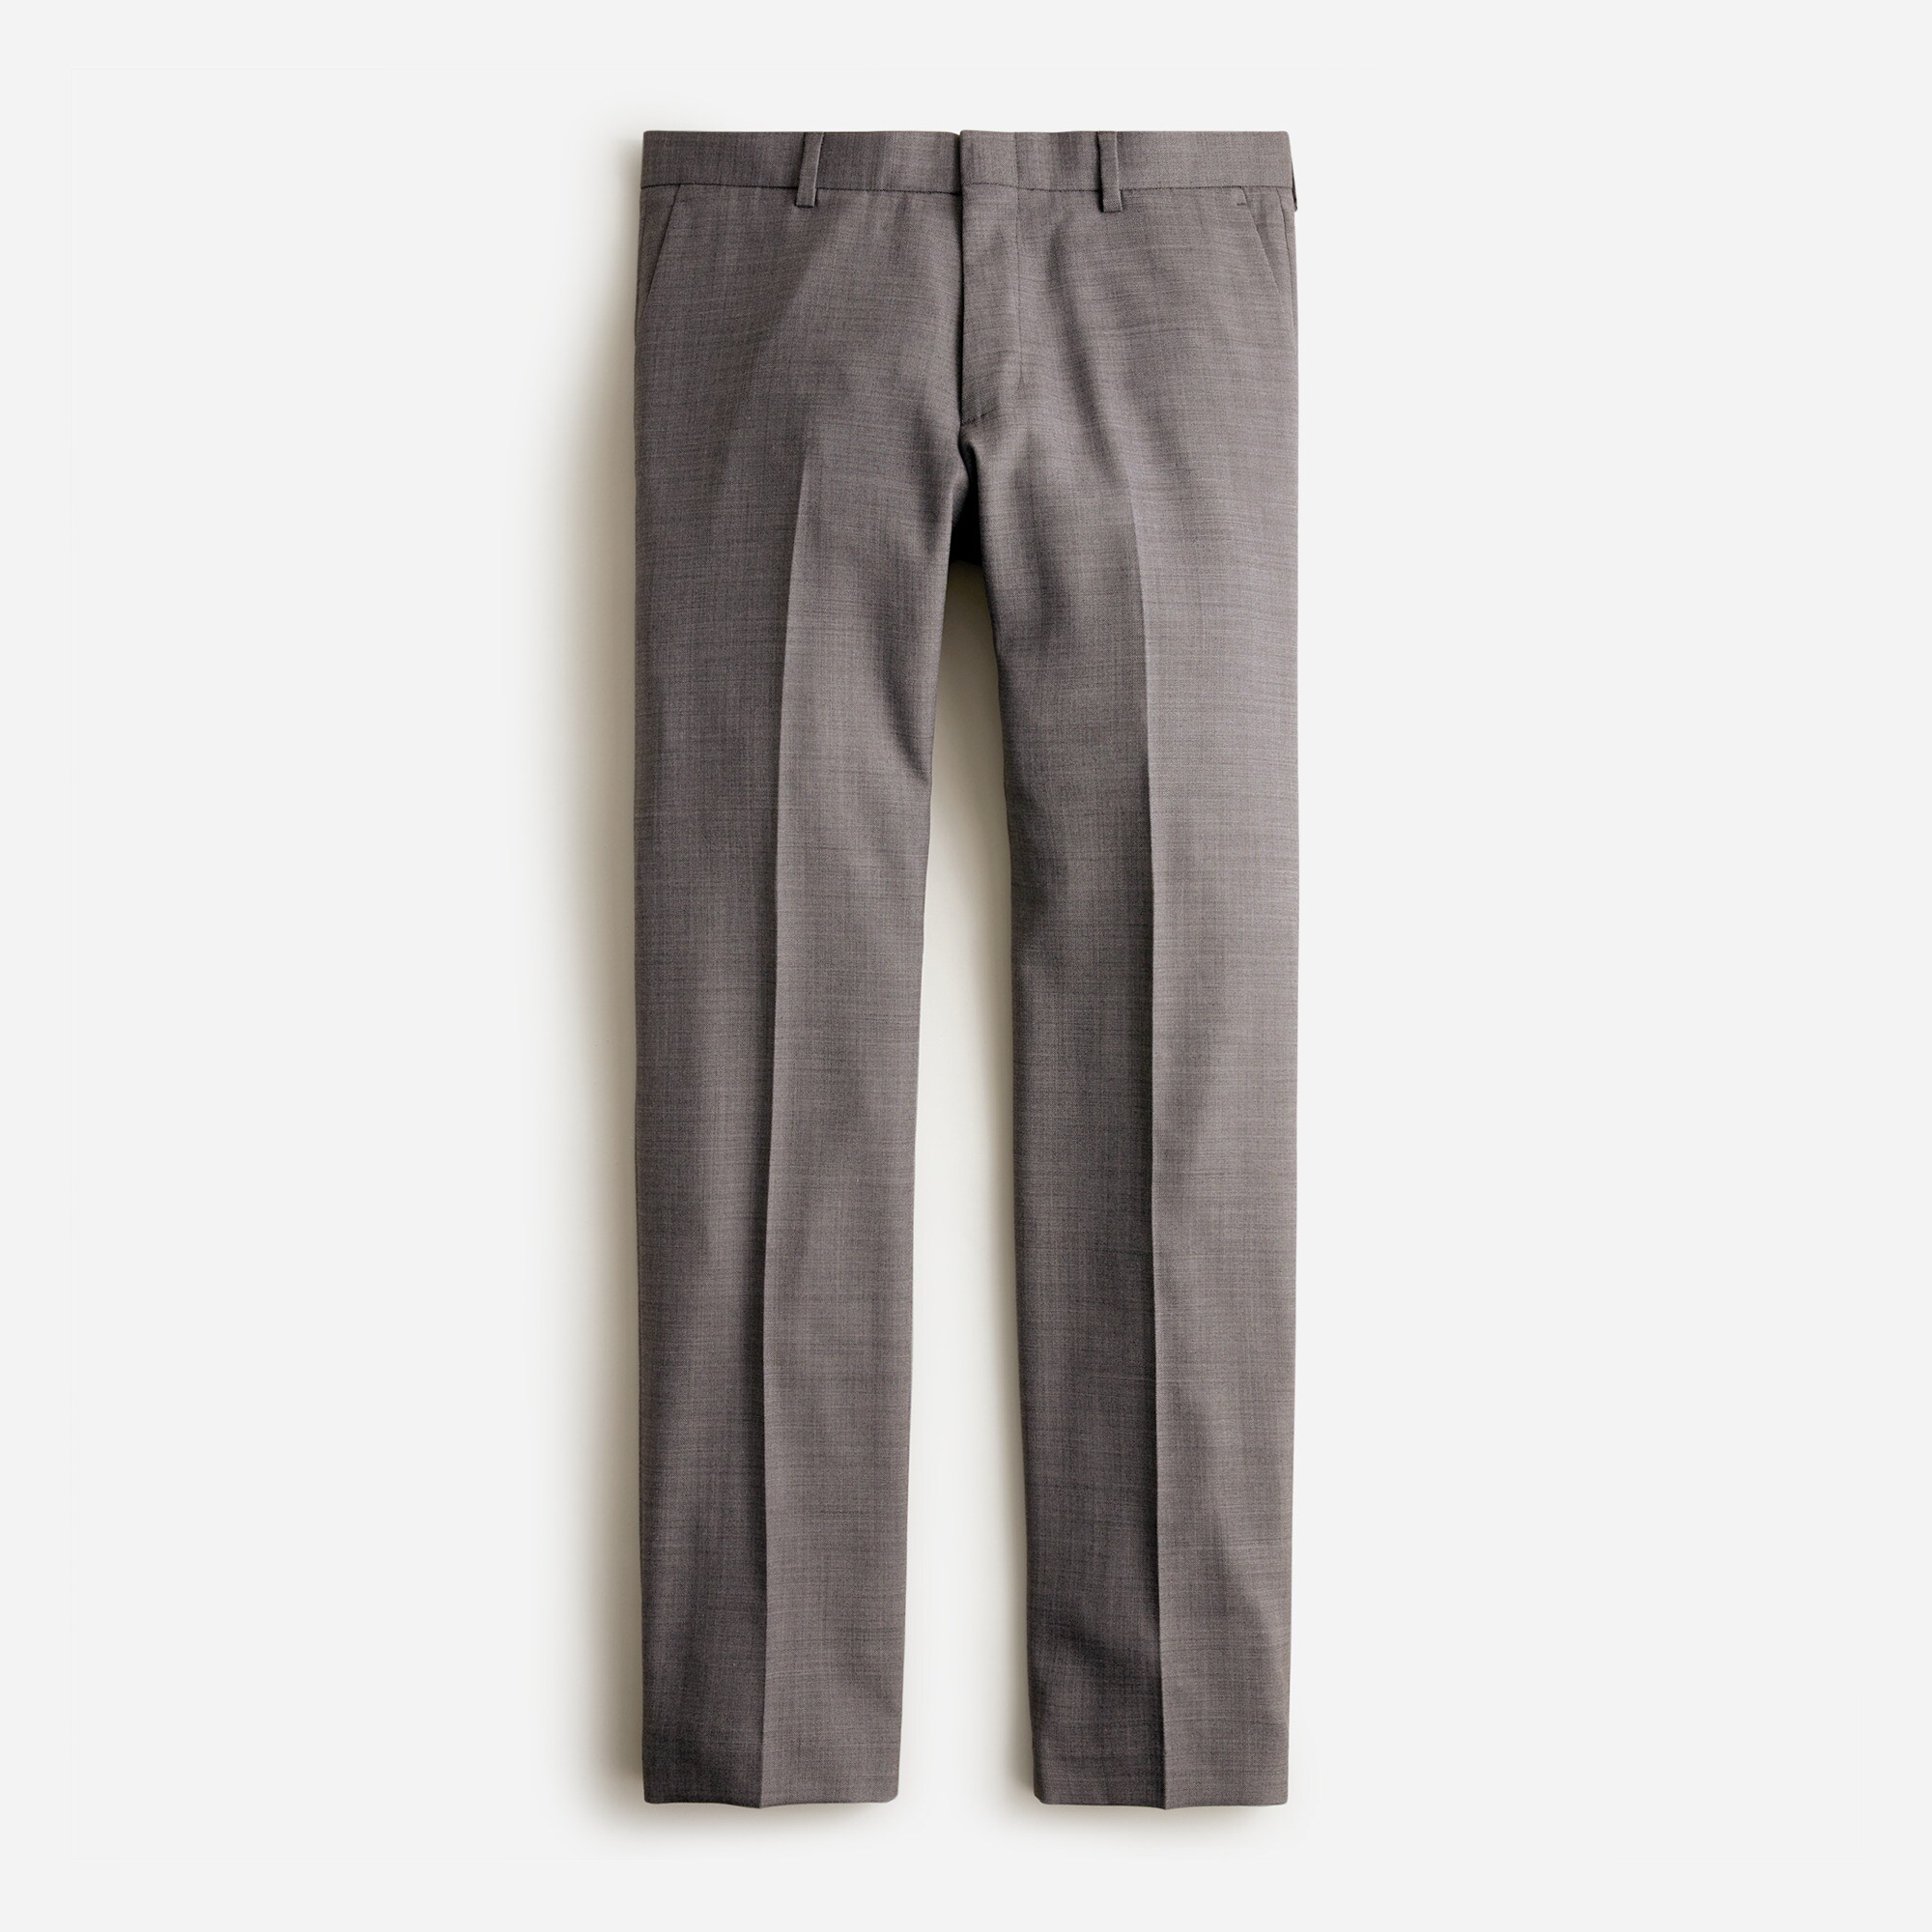  Bowery Slim-fit pant in wool blend